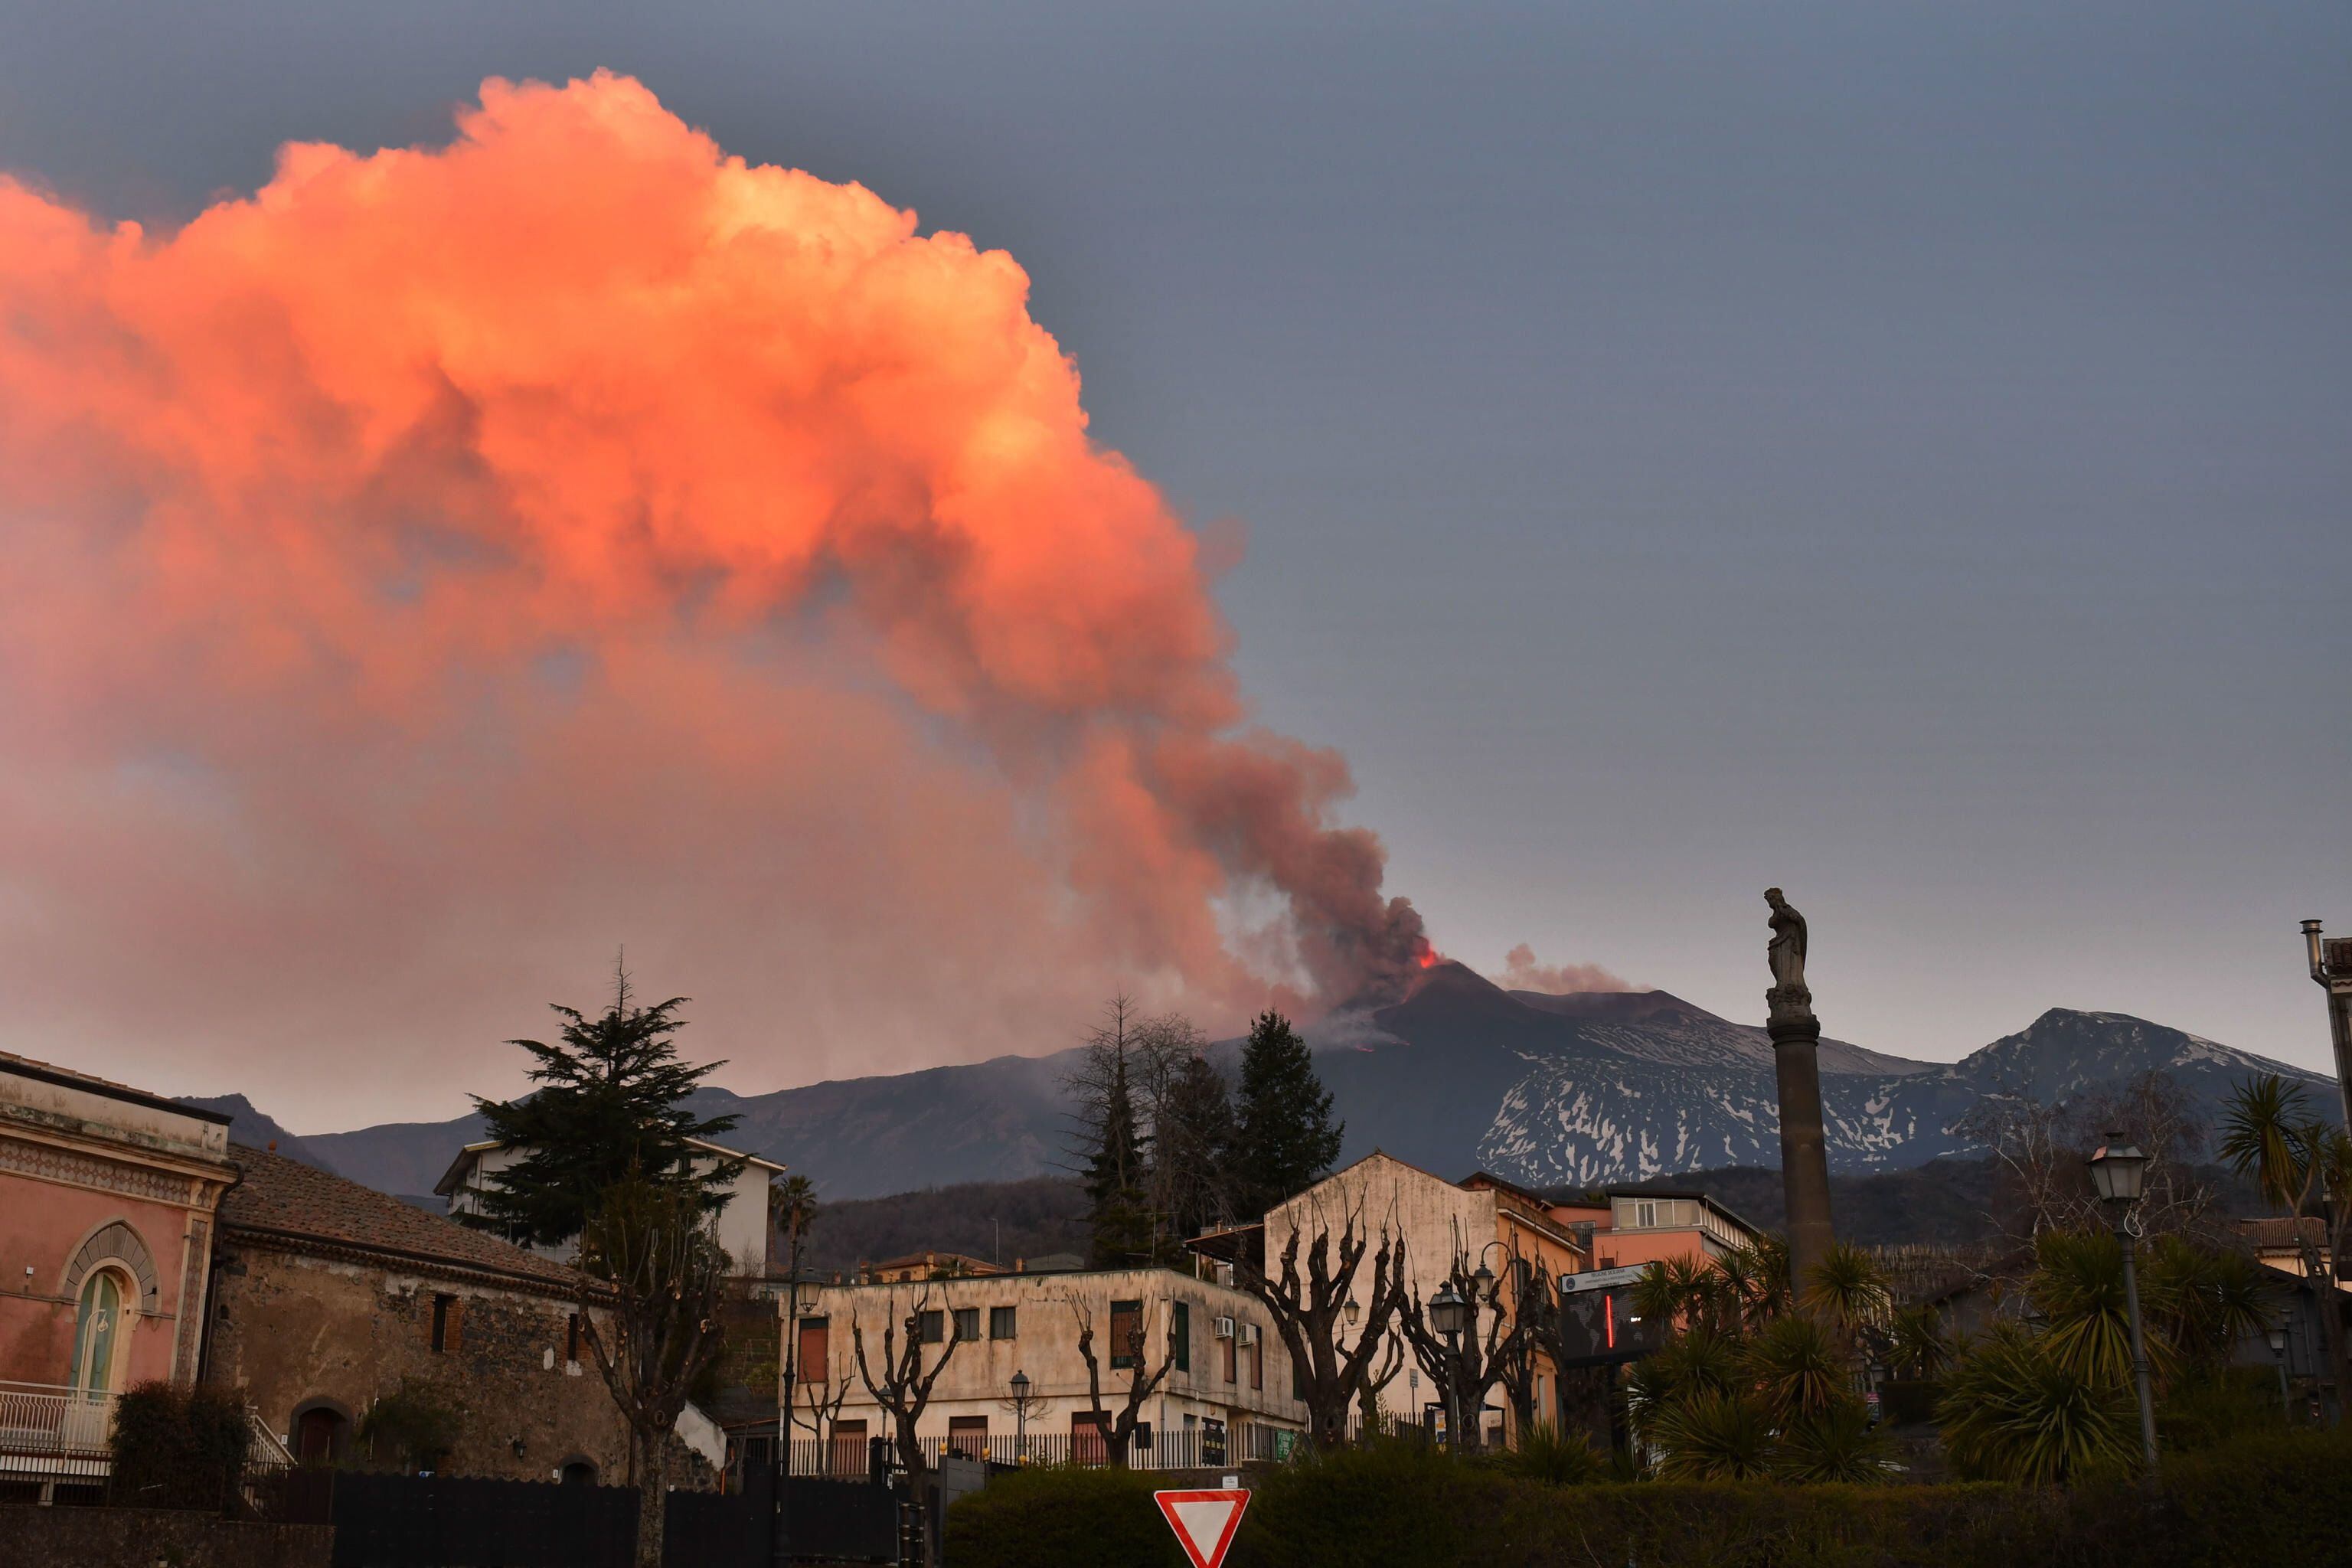 El volcán Etna, en la isla italiana de Sicilia (sur), en una fotografía de archivo. EFE/EPA/Orietta Scardino